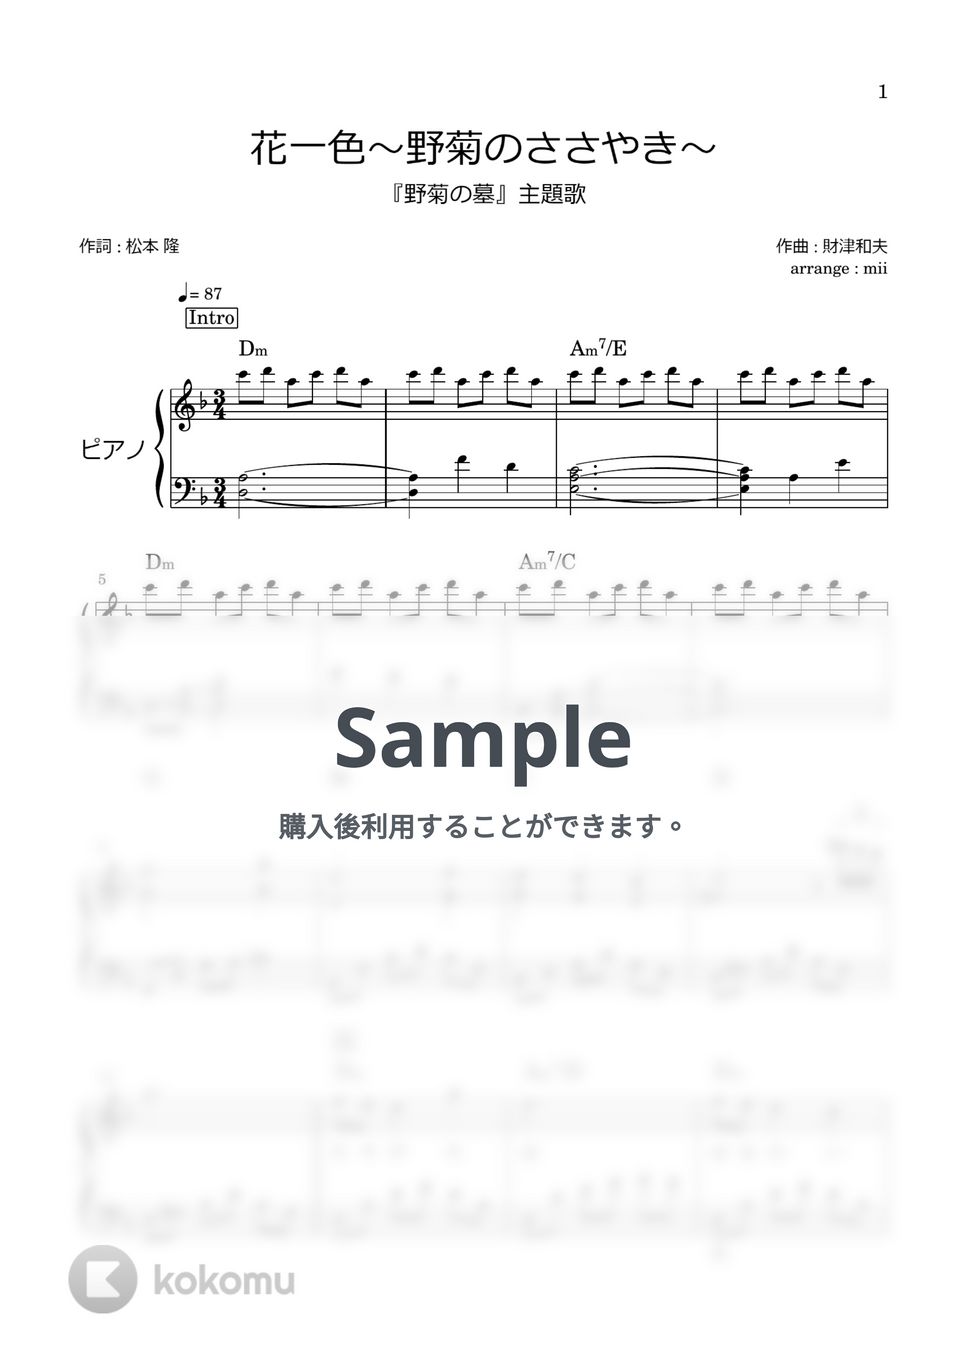 松田聖子 - 花一色 ～野菊のささやき～ (野菊の墓 主題歌) by miiの楽譜棚